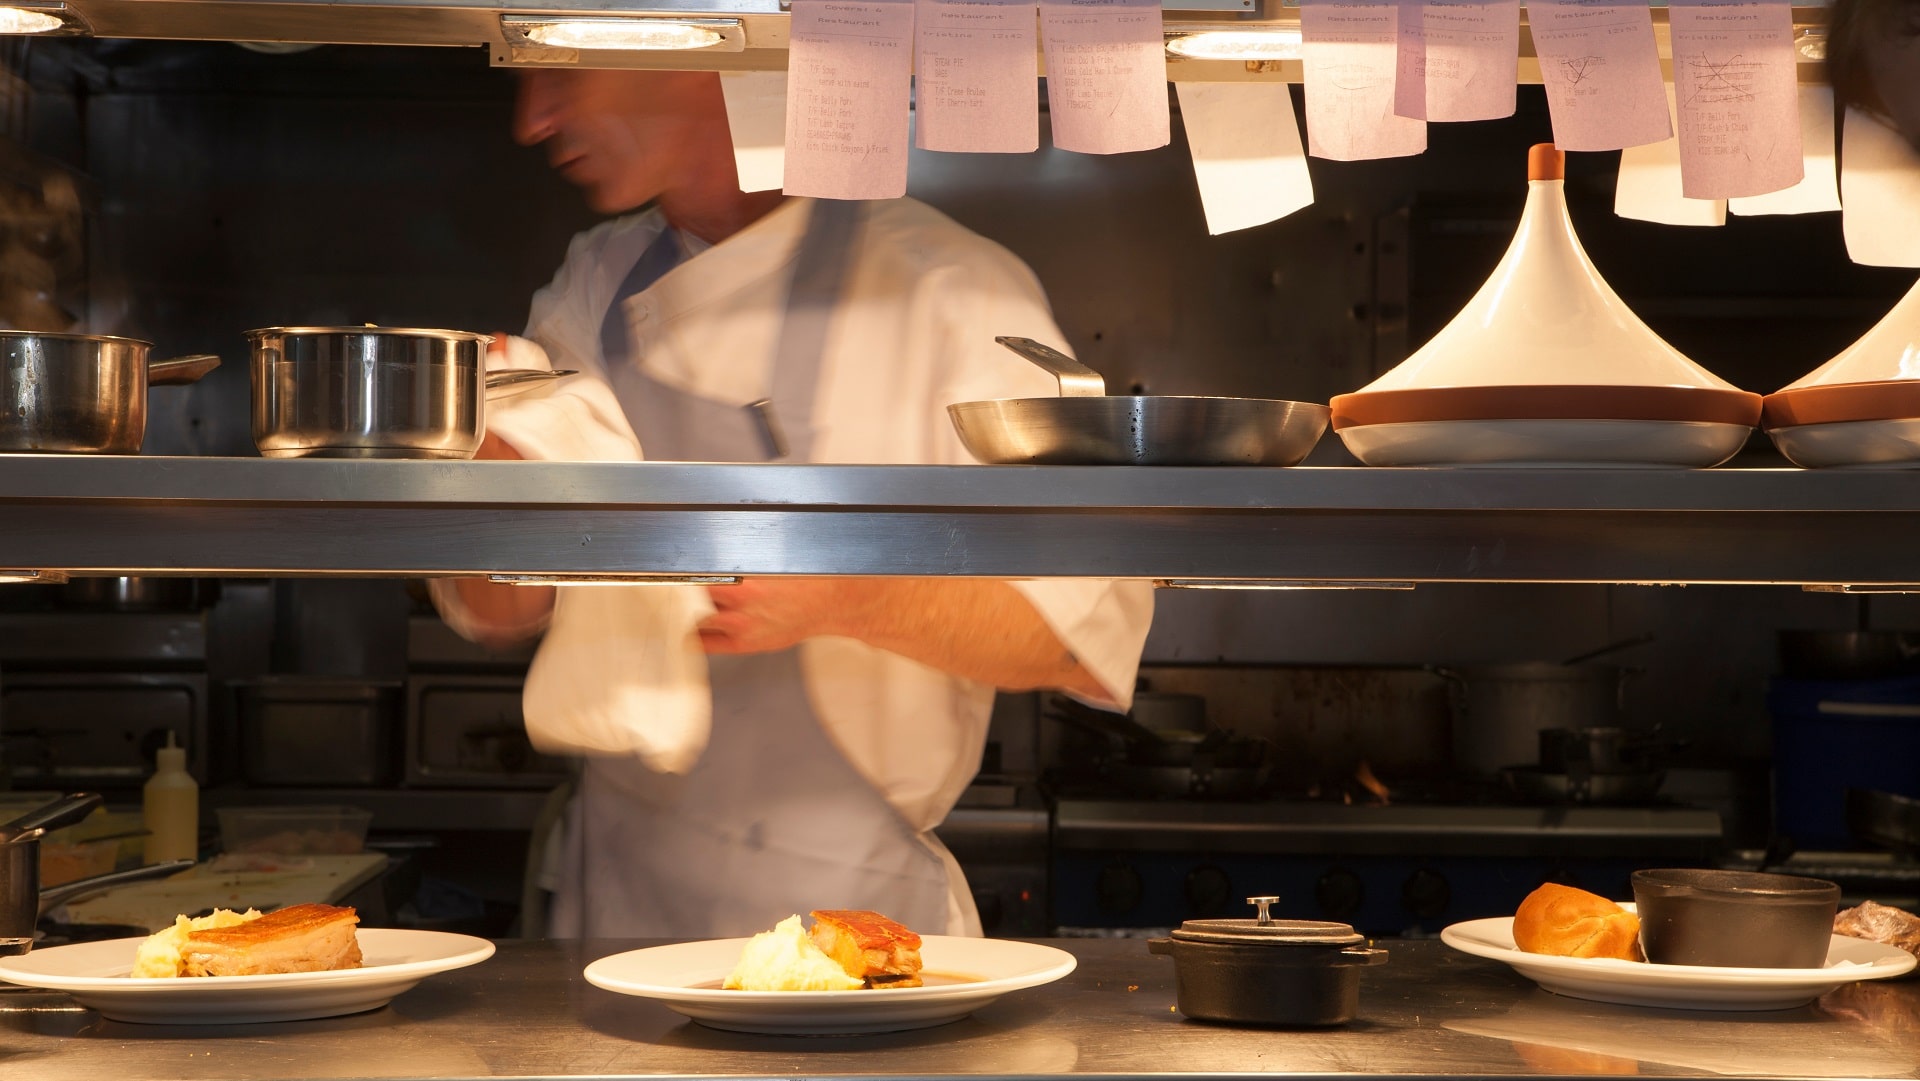 Server stands behind line in restaurant kitchen